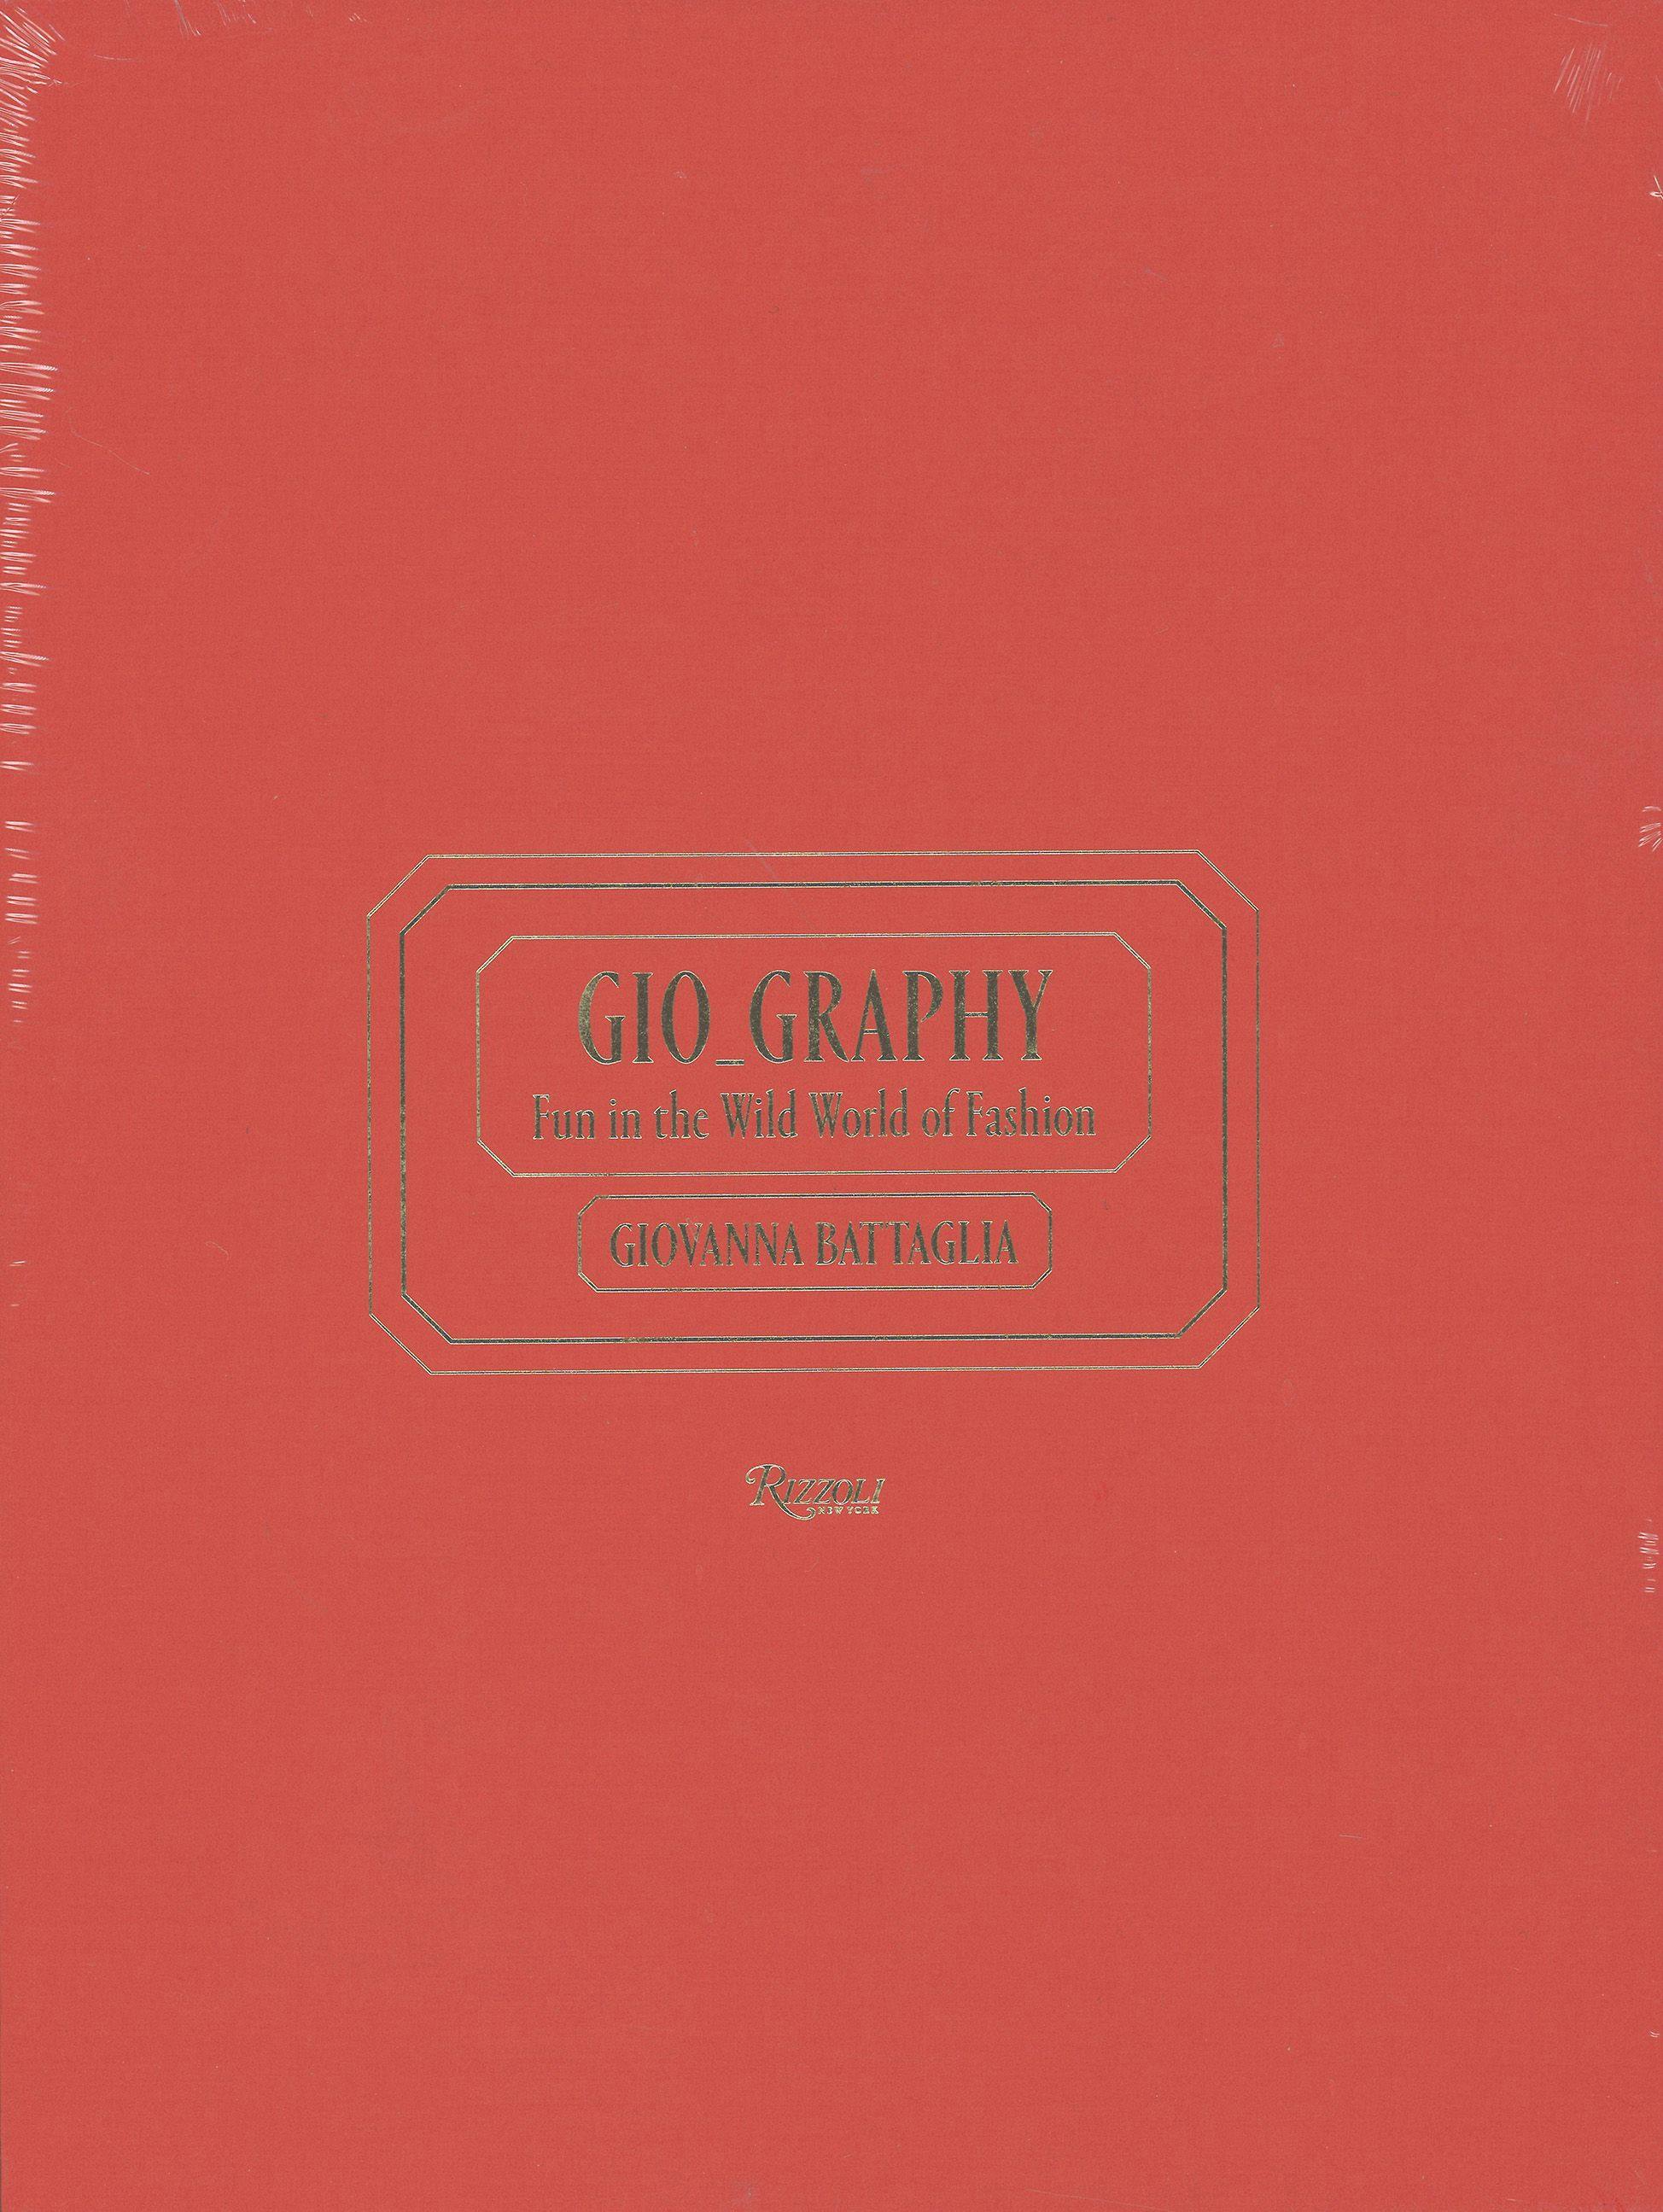 Book design for Giovanna Battaglia Gio_Graphy. Designed at Giovianni Bianco.